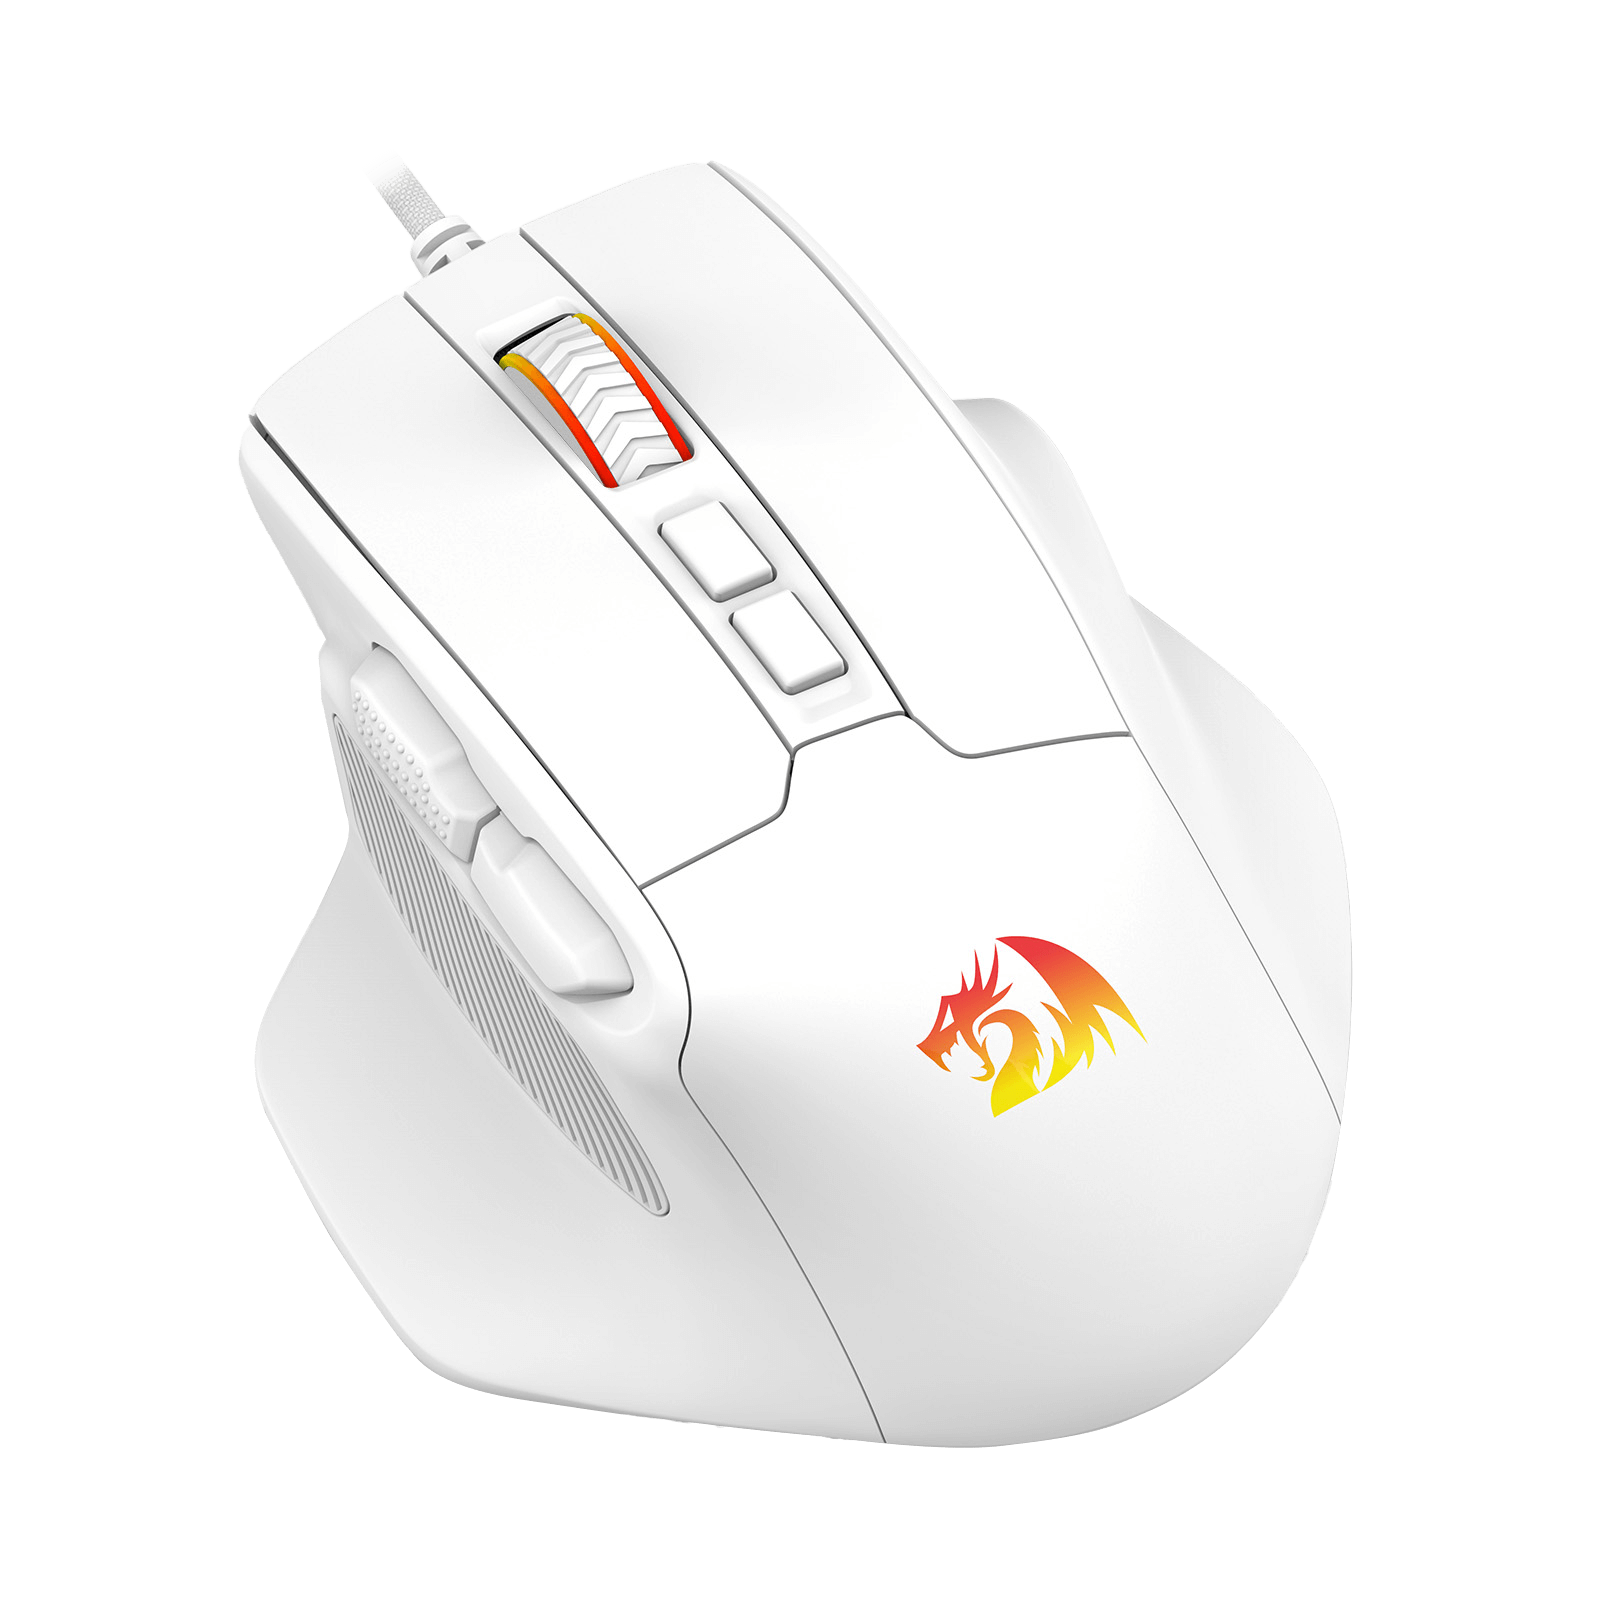 Redragon M806 Bullseye white Gaming Mouse